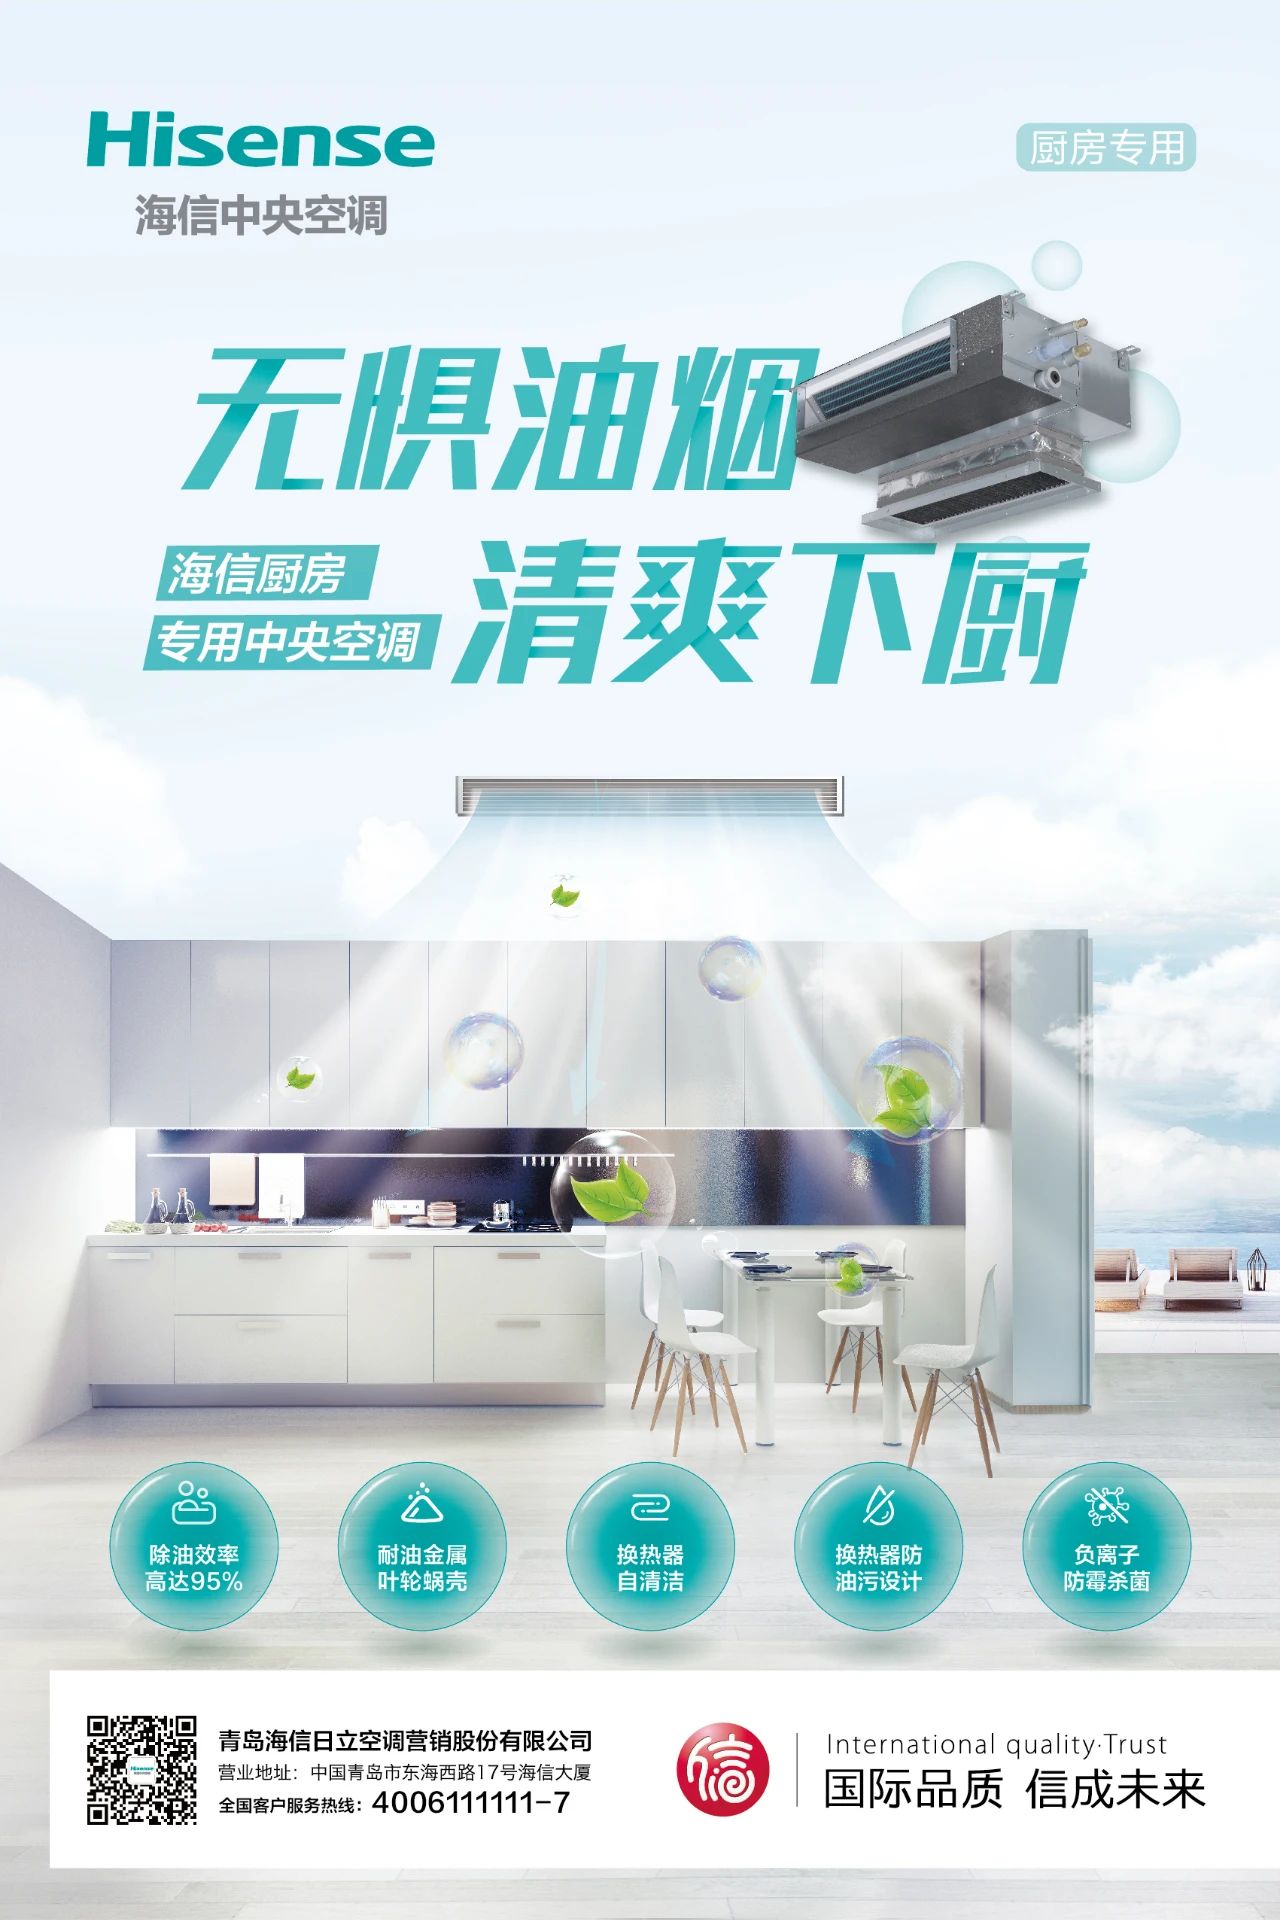 近日，本年度首款新品——海信厨房专用中央空调（以下称“海信厨房机”）已经正式上市了。